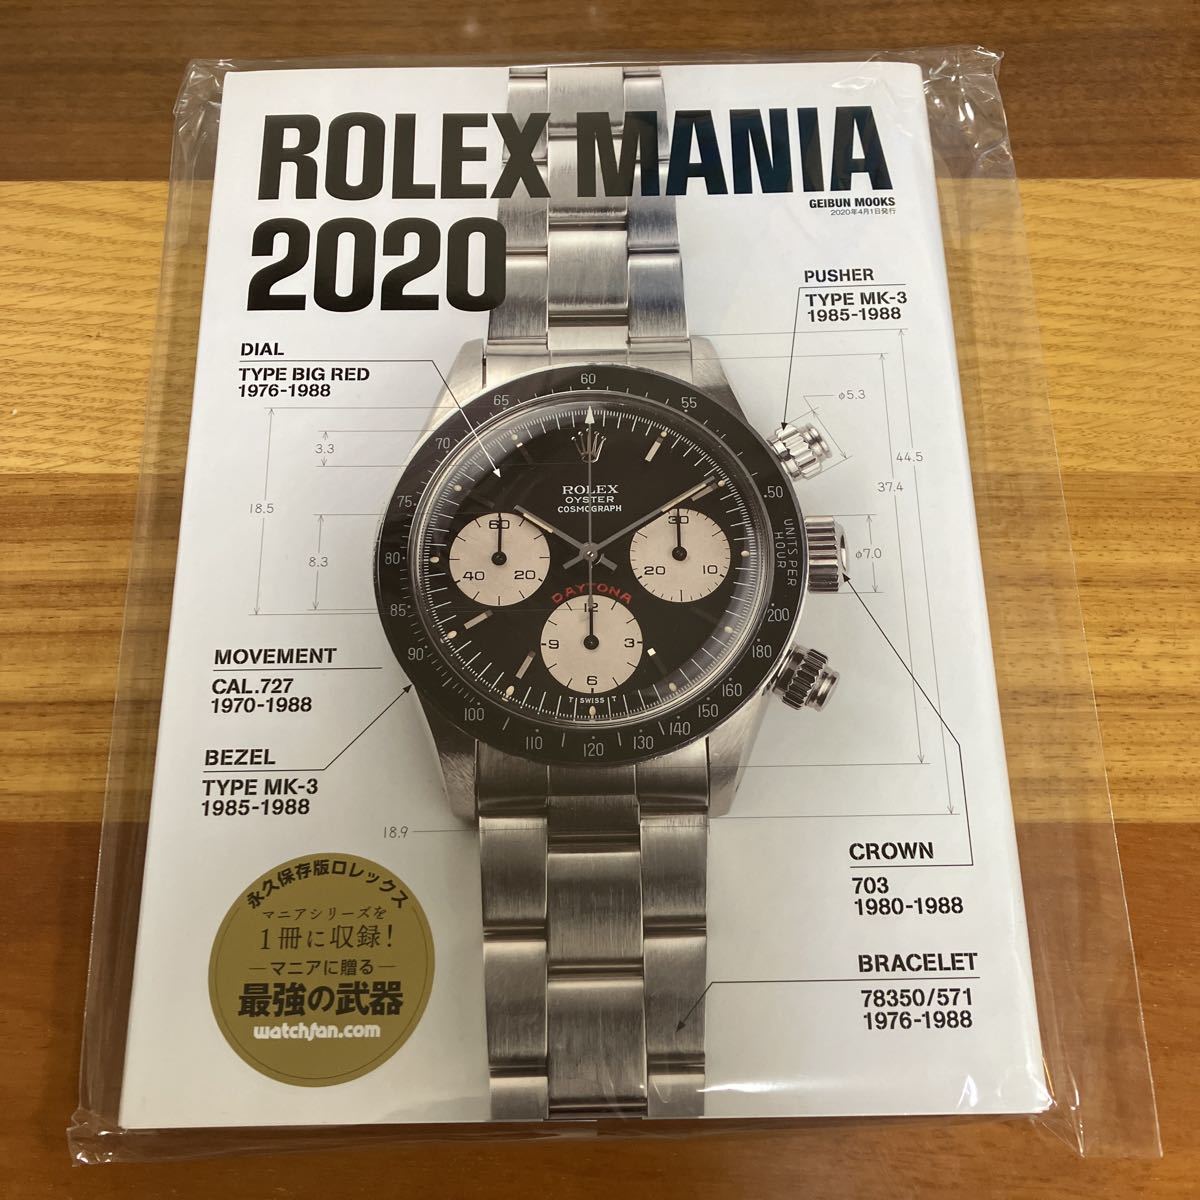 特価】 2020 MANIA ROLEX 即決! 未使用保管品 ウォッチファン watchfan